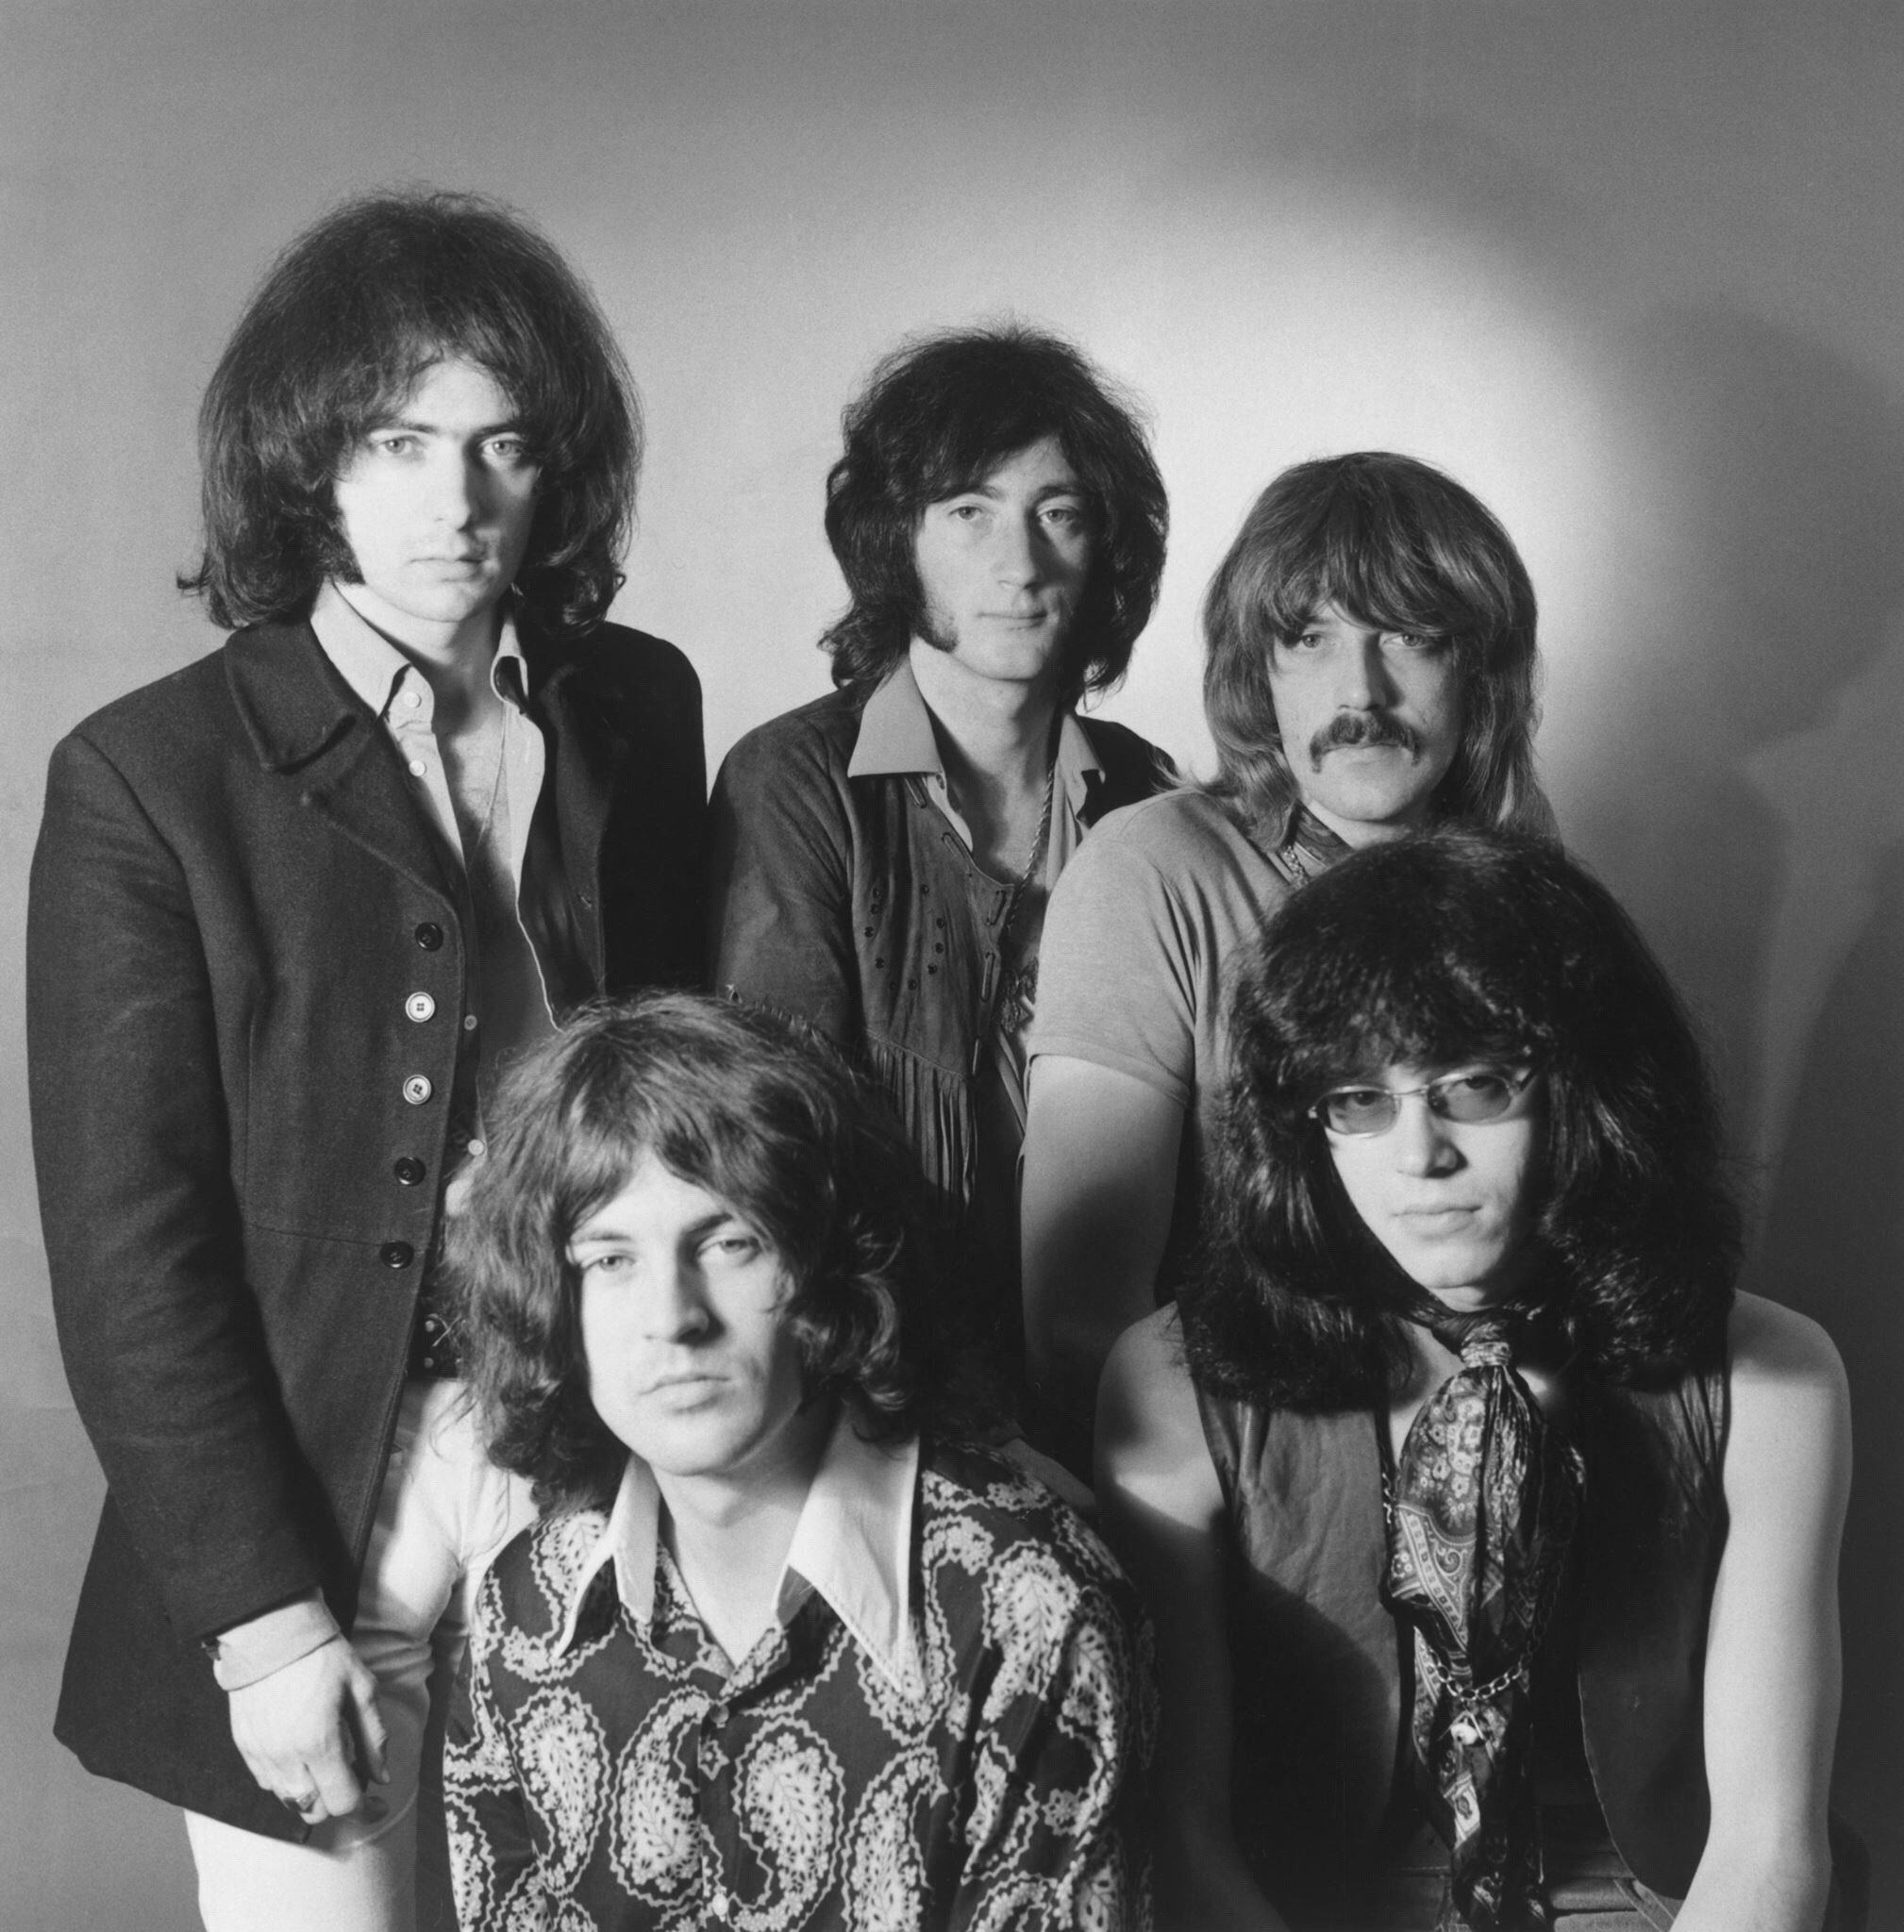 Ди перпл. Группа дип перпл. Группа Deep Purple 1968. Группа Deep Purple 1970. Дип перпл 1968.